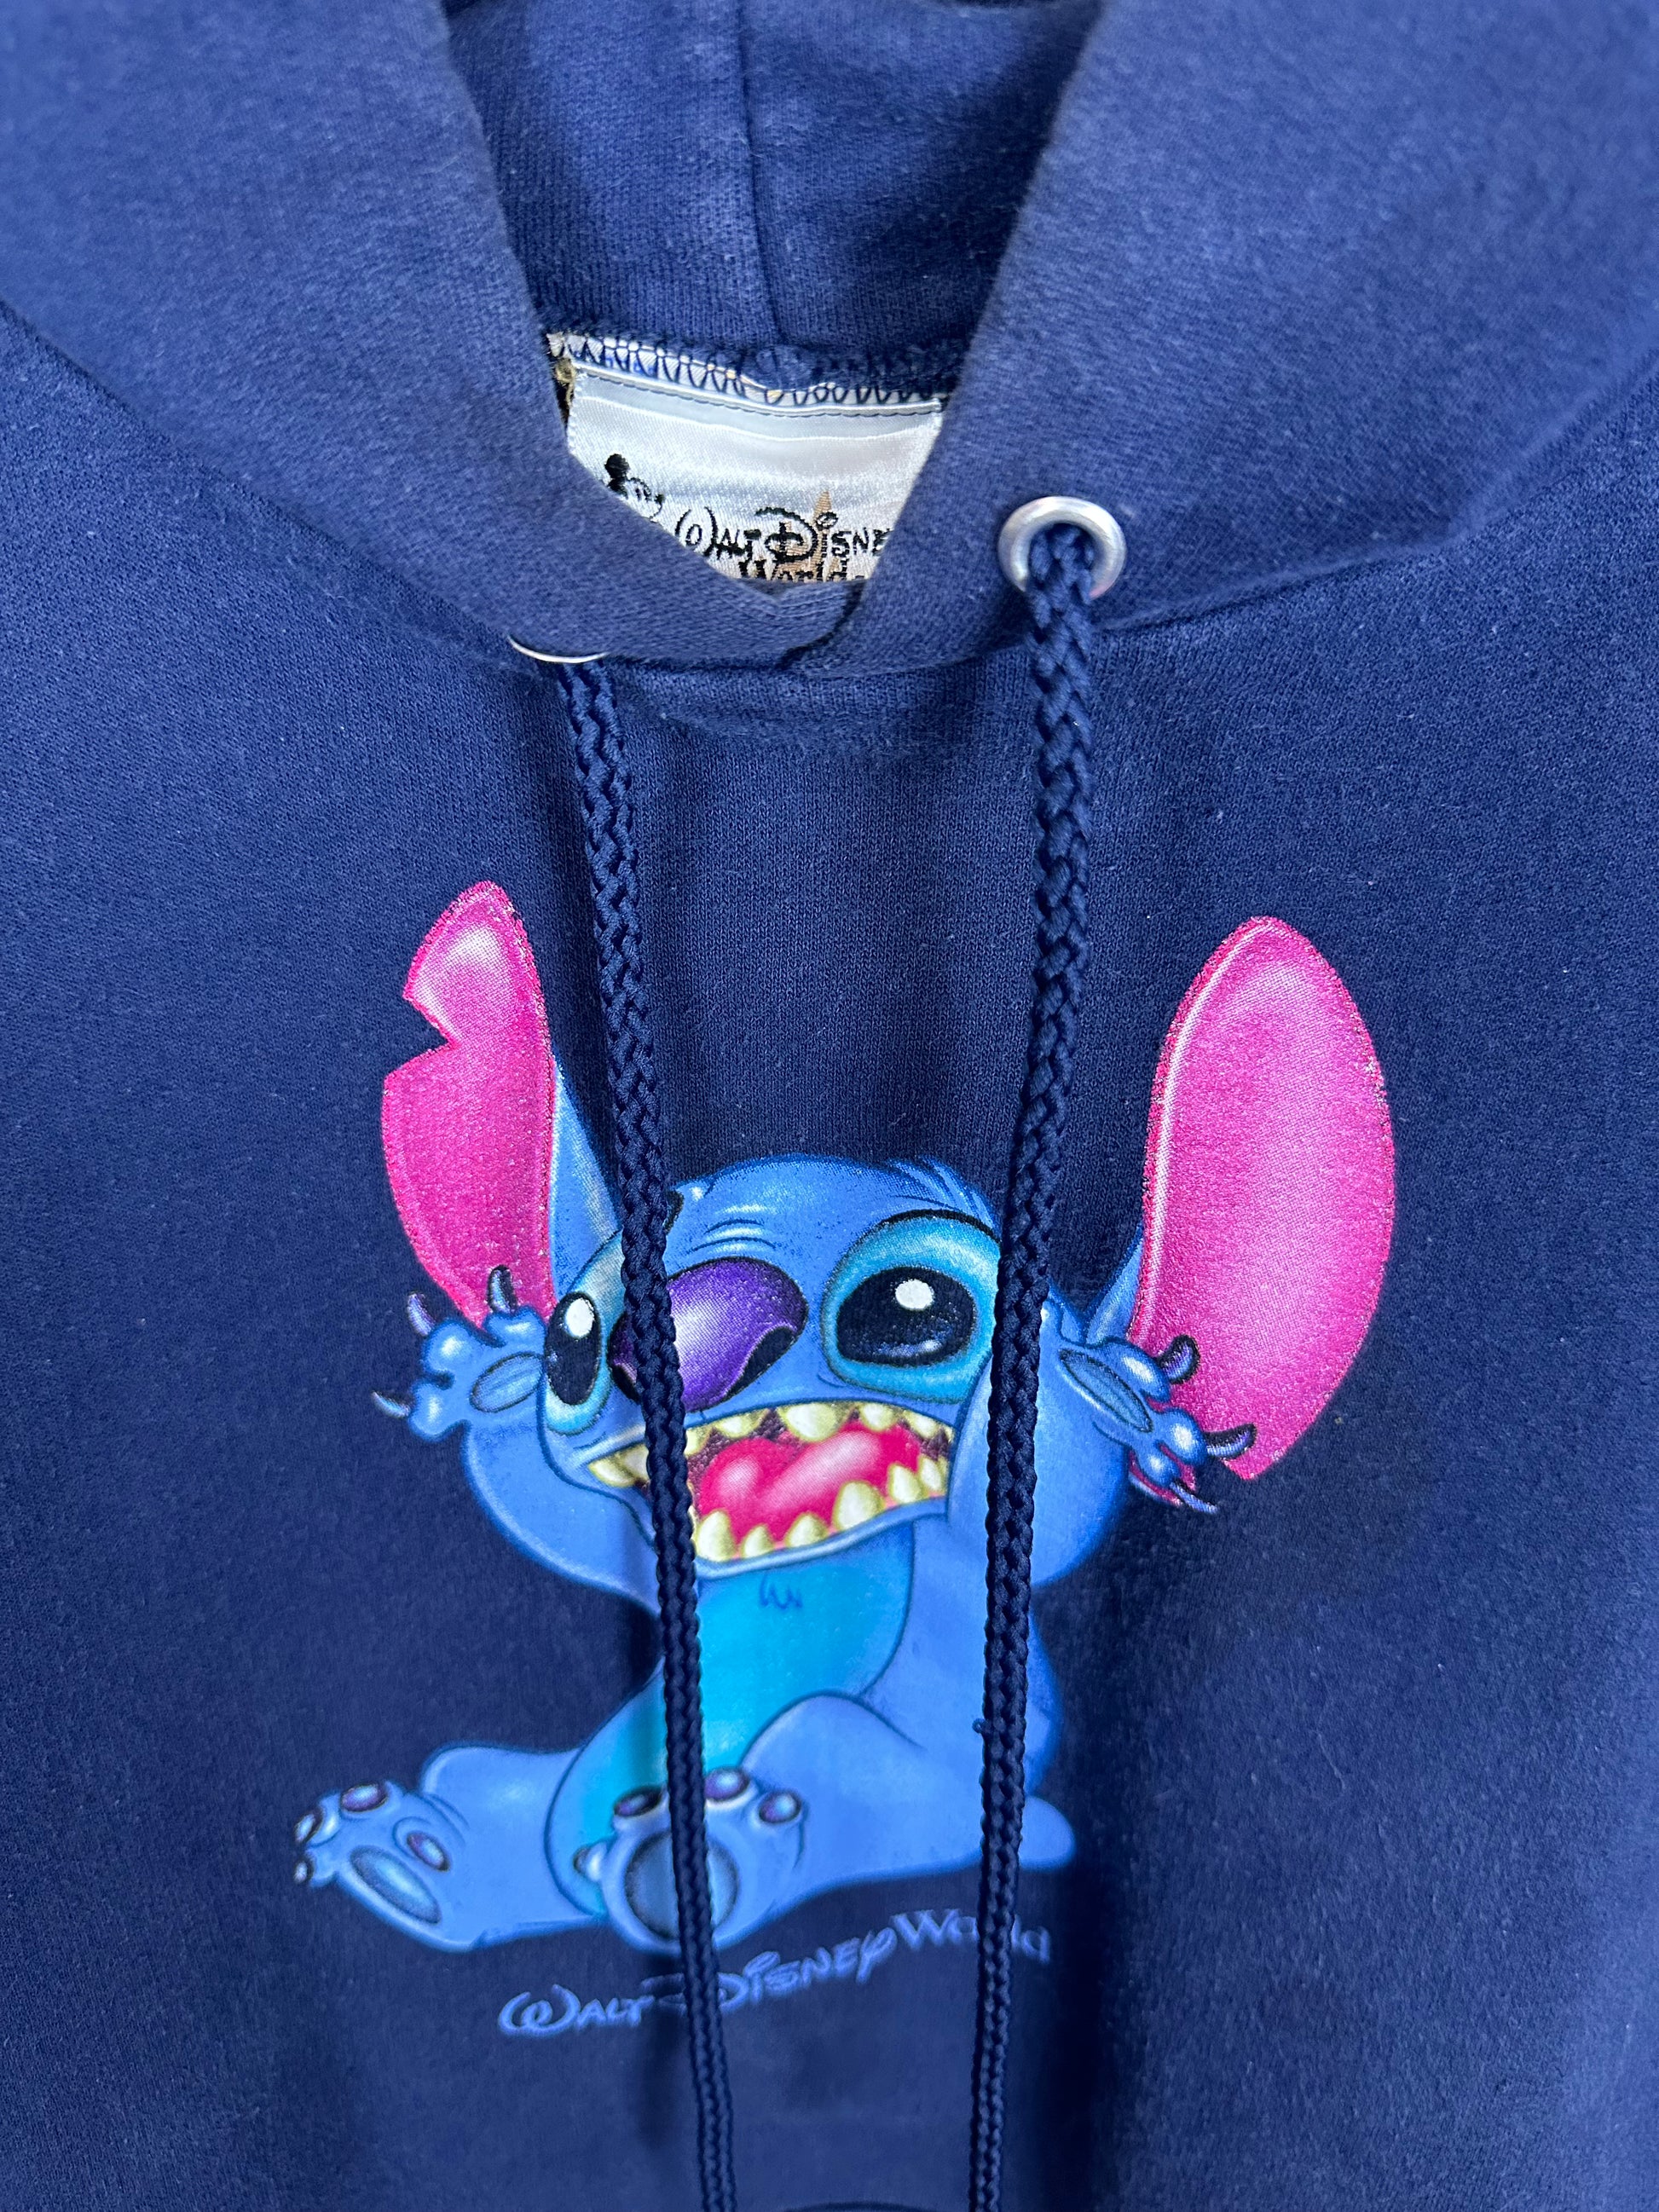 disney world stitch merchandise｜TikTok Search